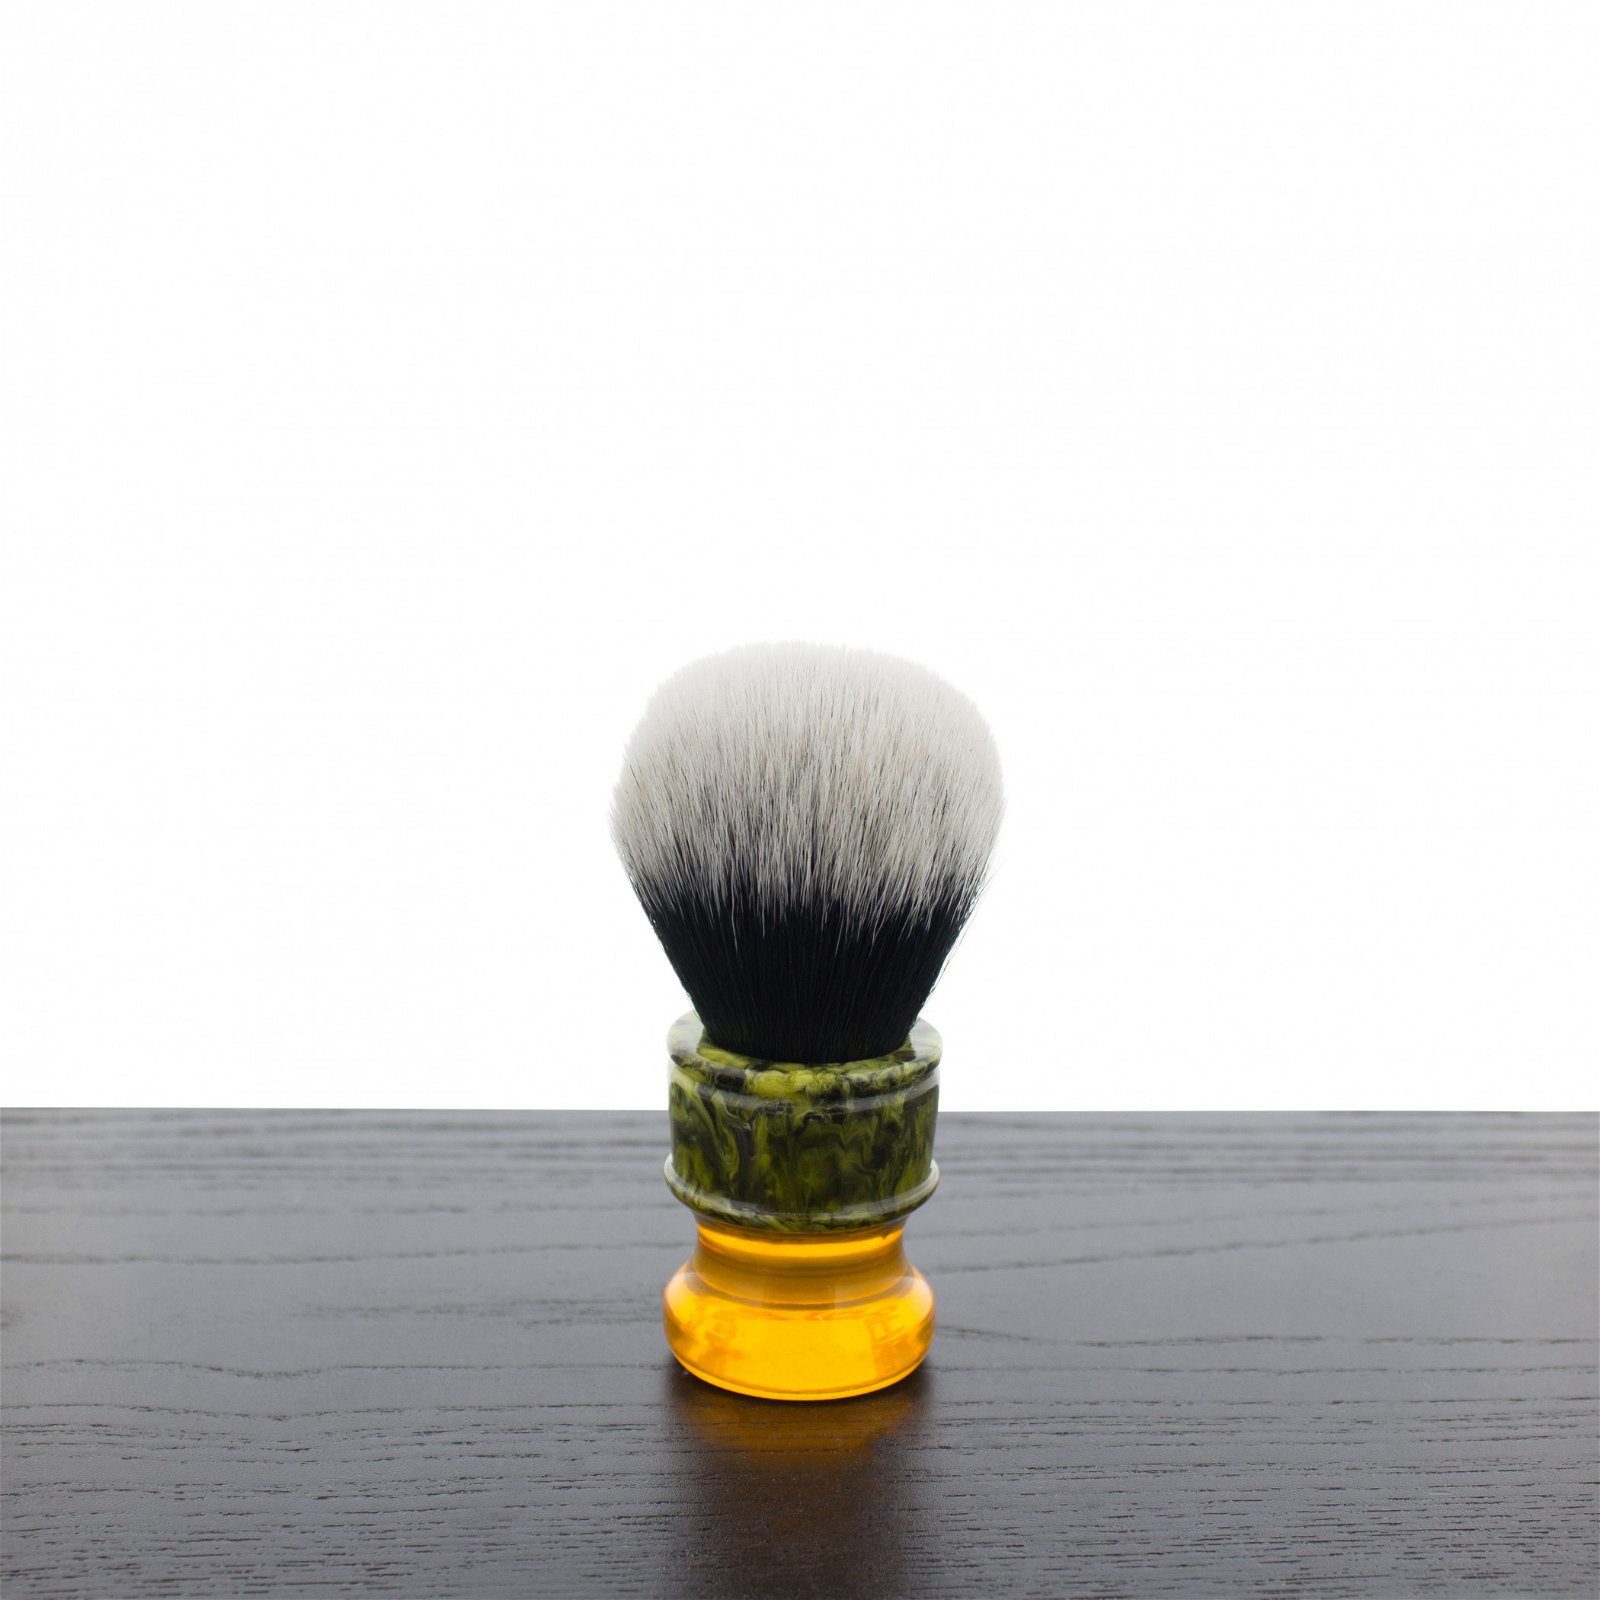 Image of Yaqi R1730 Sagrada Familia Tuxedo Synthetic Shaving Brush